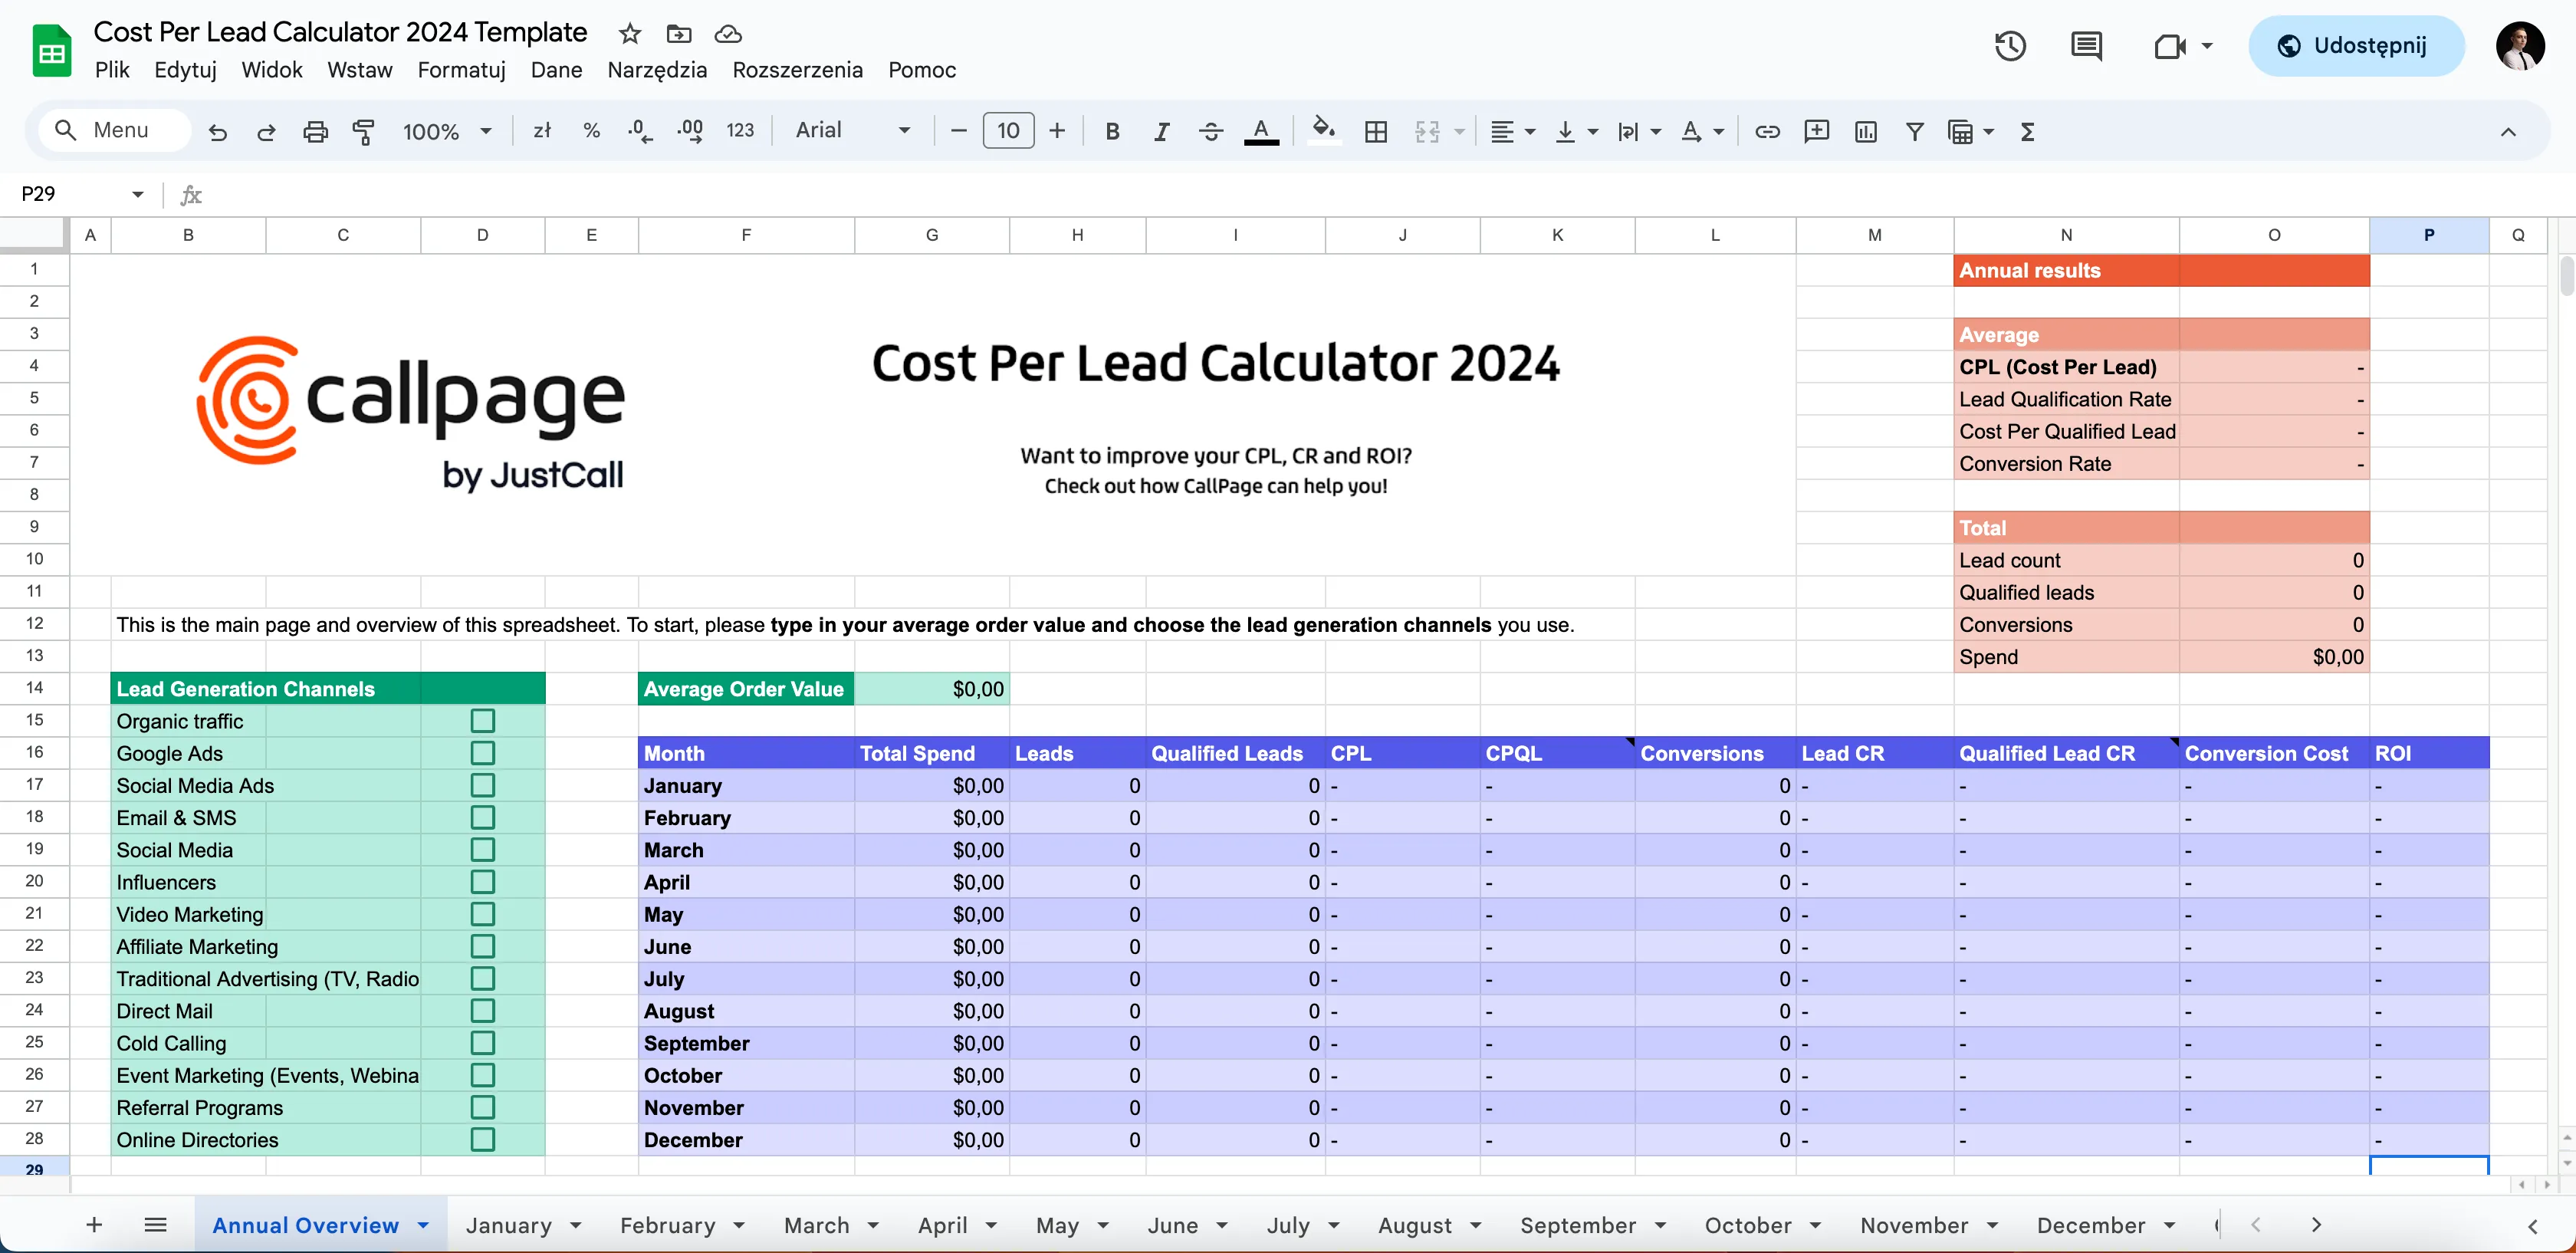 Cost per lead (CPL) calculator by CallPage